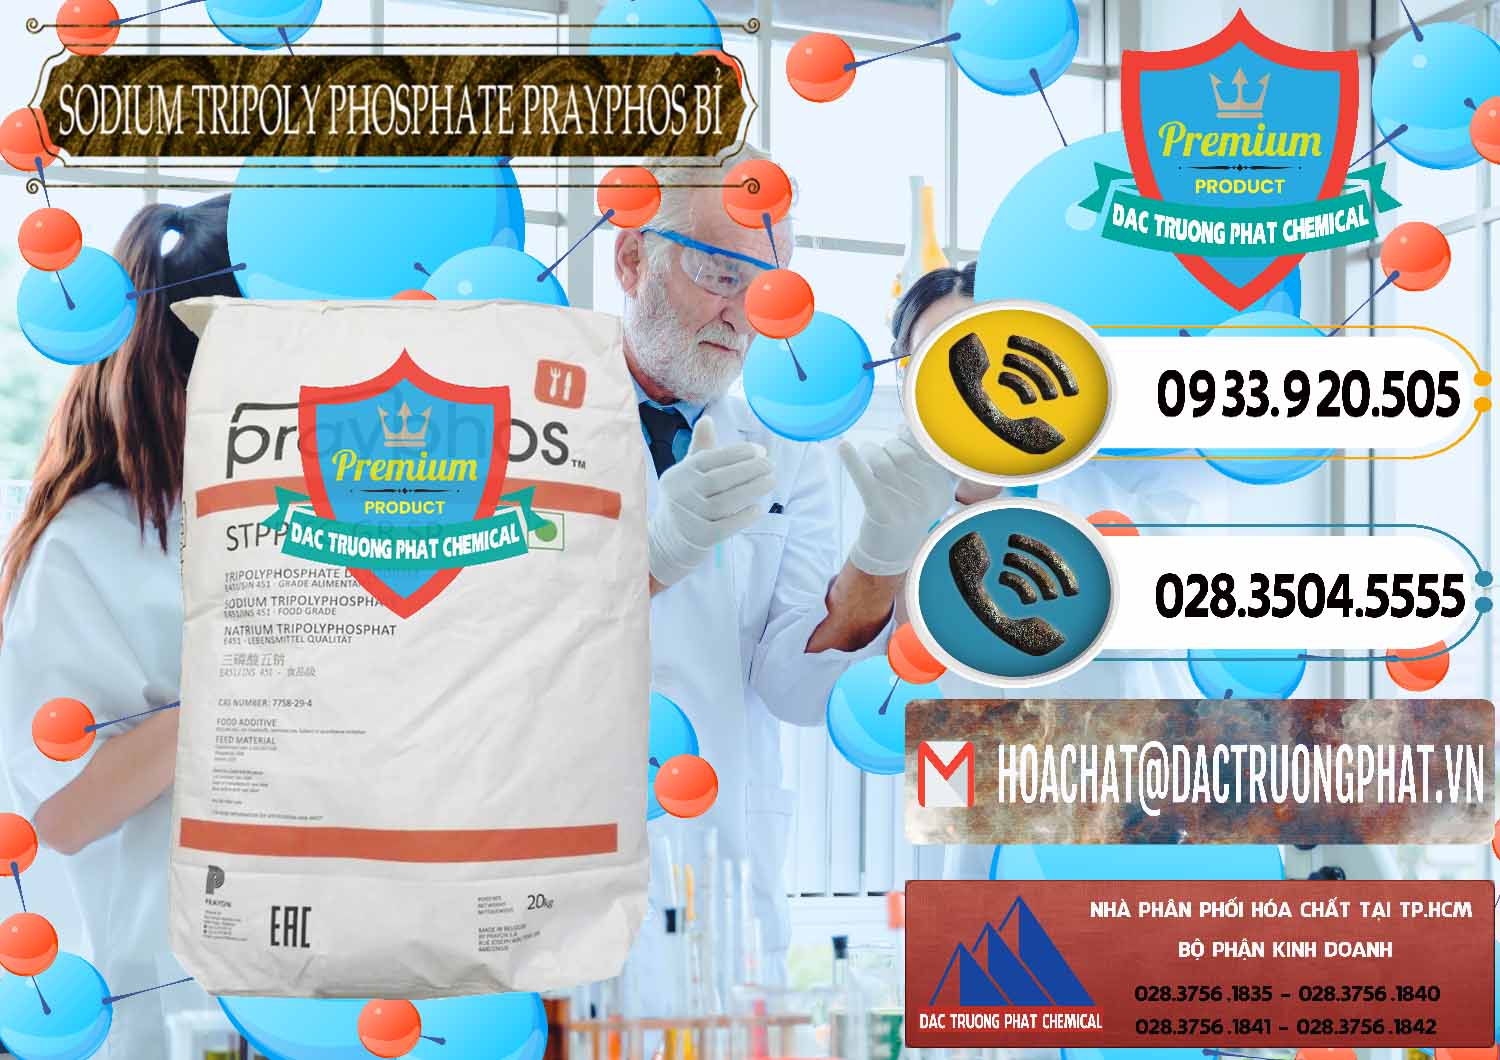 Cty bán _ cung ứng Sodium Tripoly Phosphate - STPP Prayphos Bỉ Belgium - 0444 - Đơn vị chuyên cung cấp _ nhập khẩu hóa chất tại TP.HCM - hoachatdetnhuom.vn